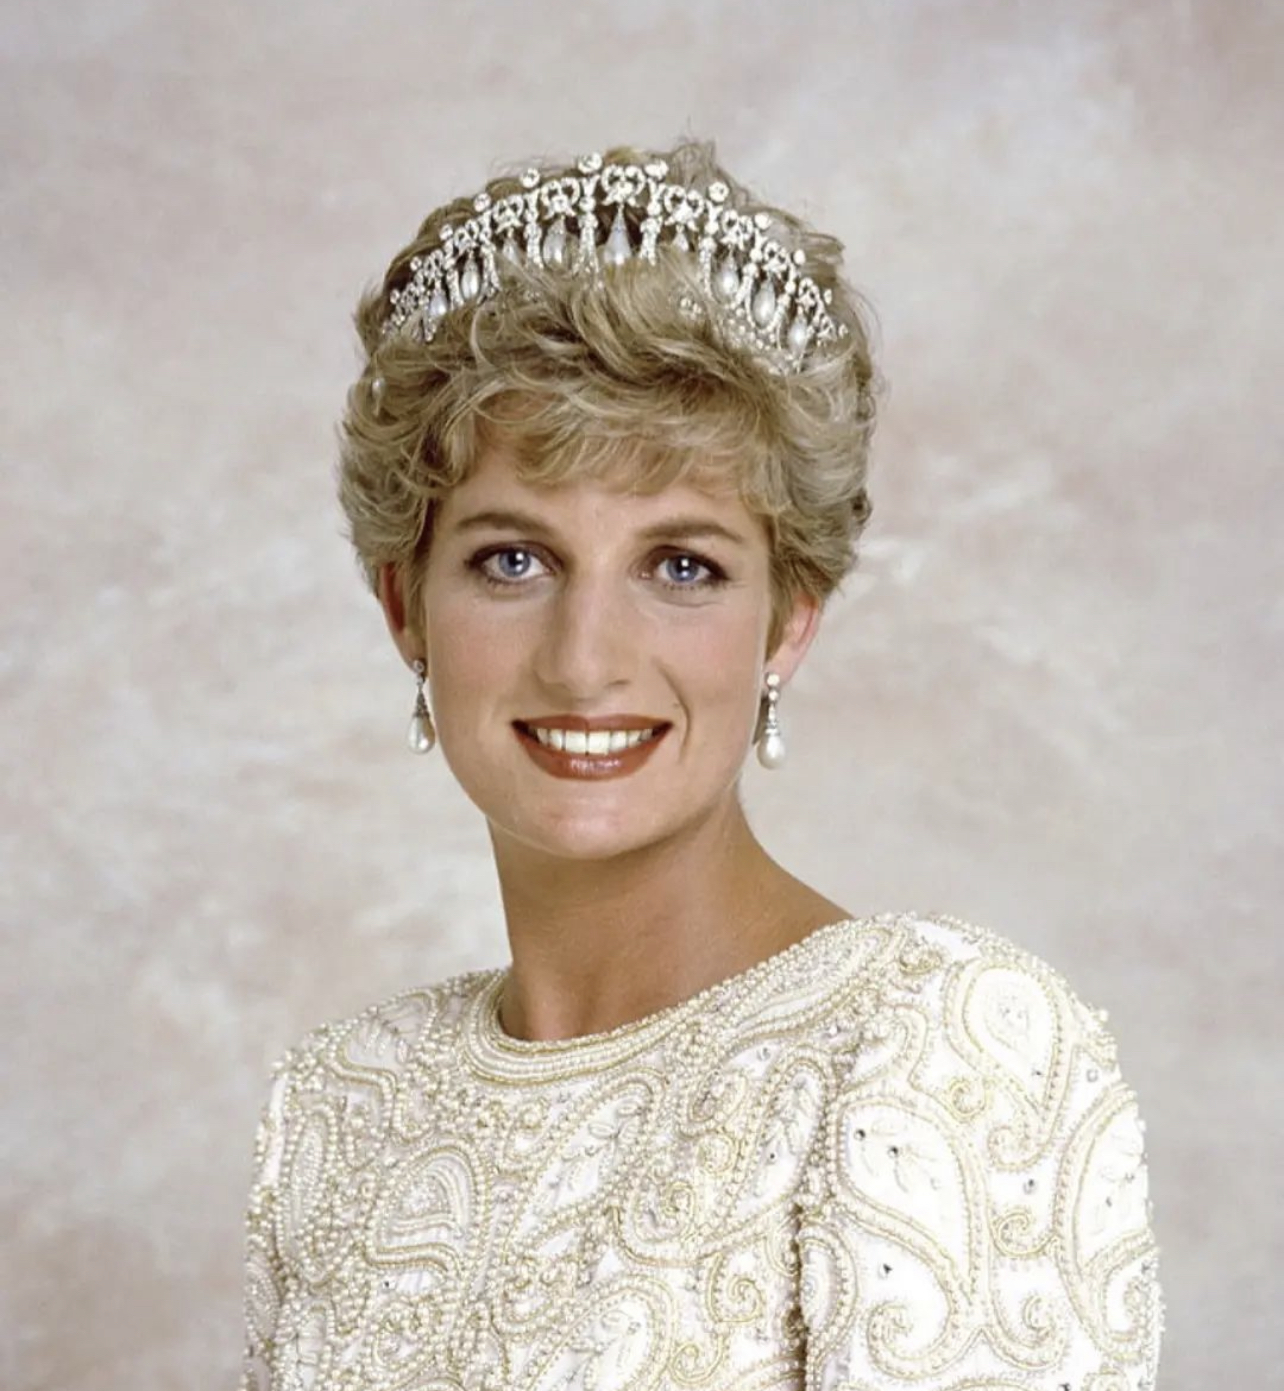 Πριγκίπισσα Diana: γιατί ασκεί ακόμη τόση επιρροή 25 χρόνια μετά τον θάνατό της